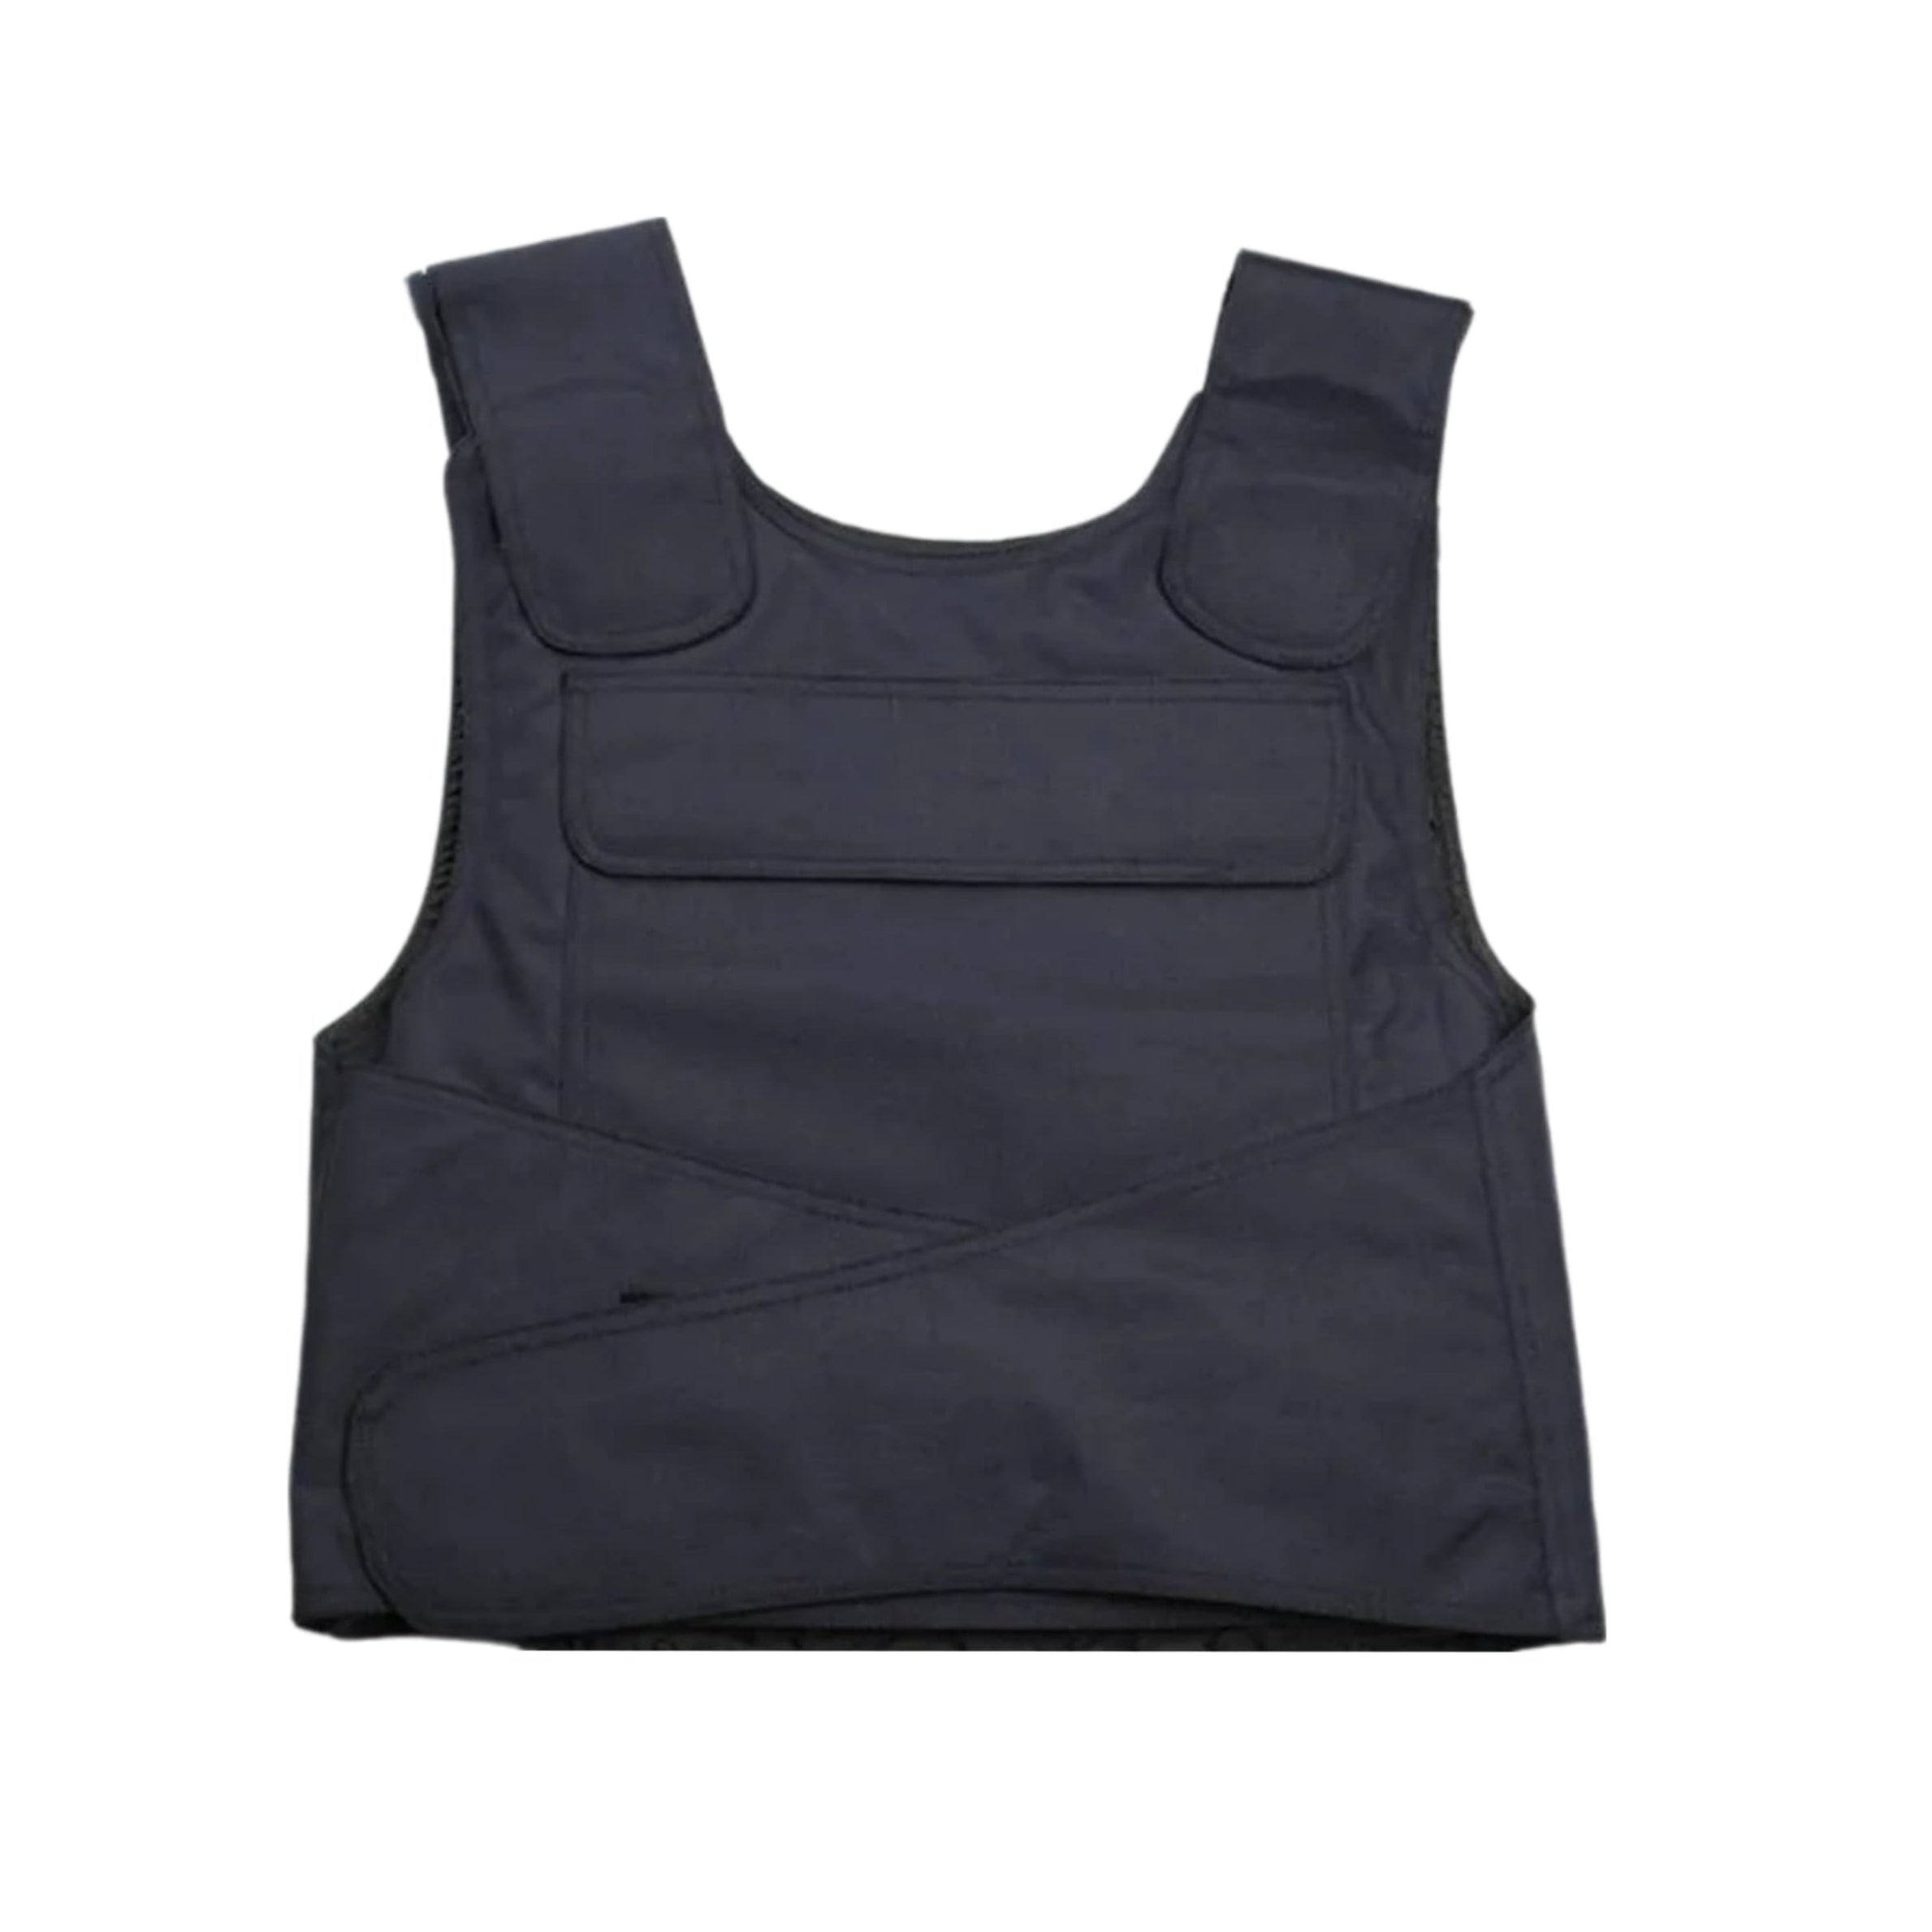 Stab-resistant vest made of manganese steel